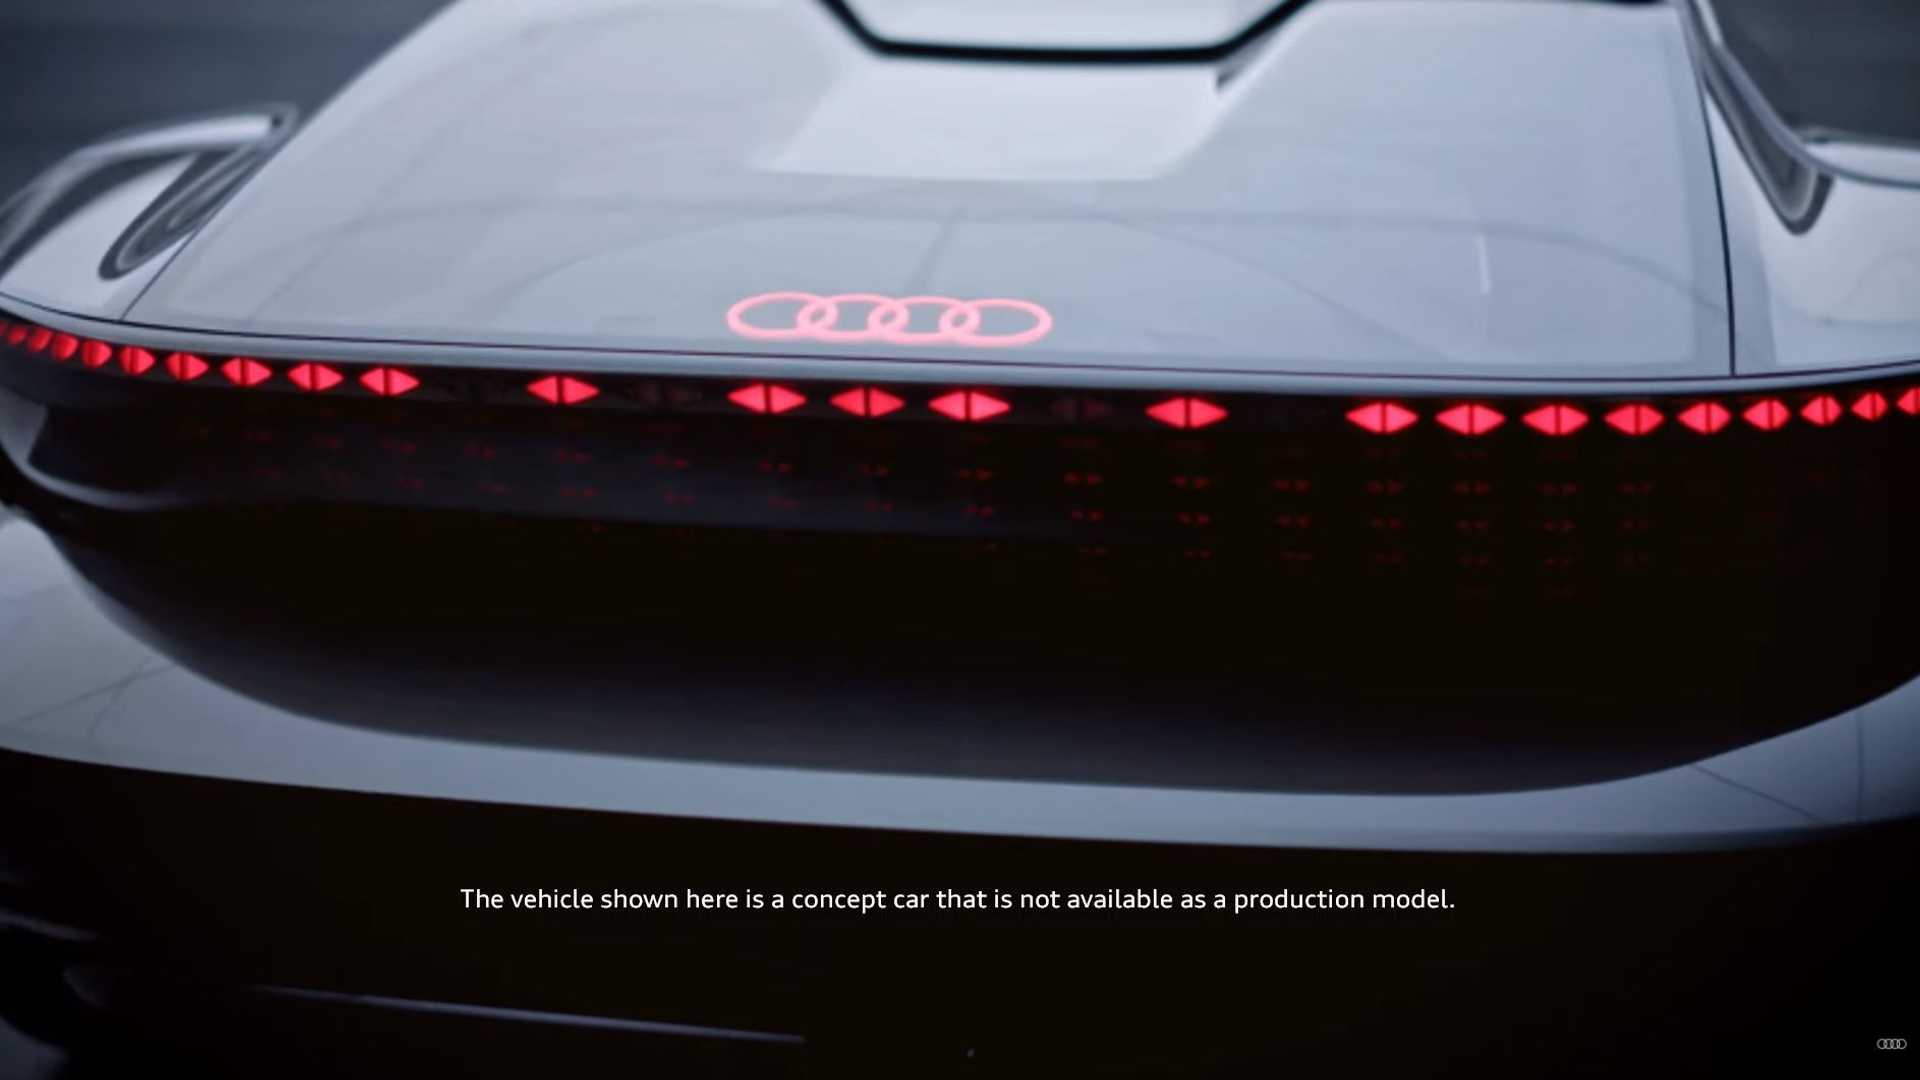 رونمایی آئودی از خودرو مفهومی جدید خود با نام skysphere با قابلیت تغییر شکل + فیلم